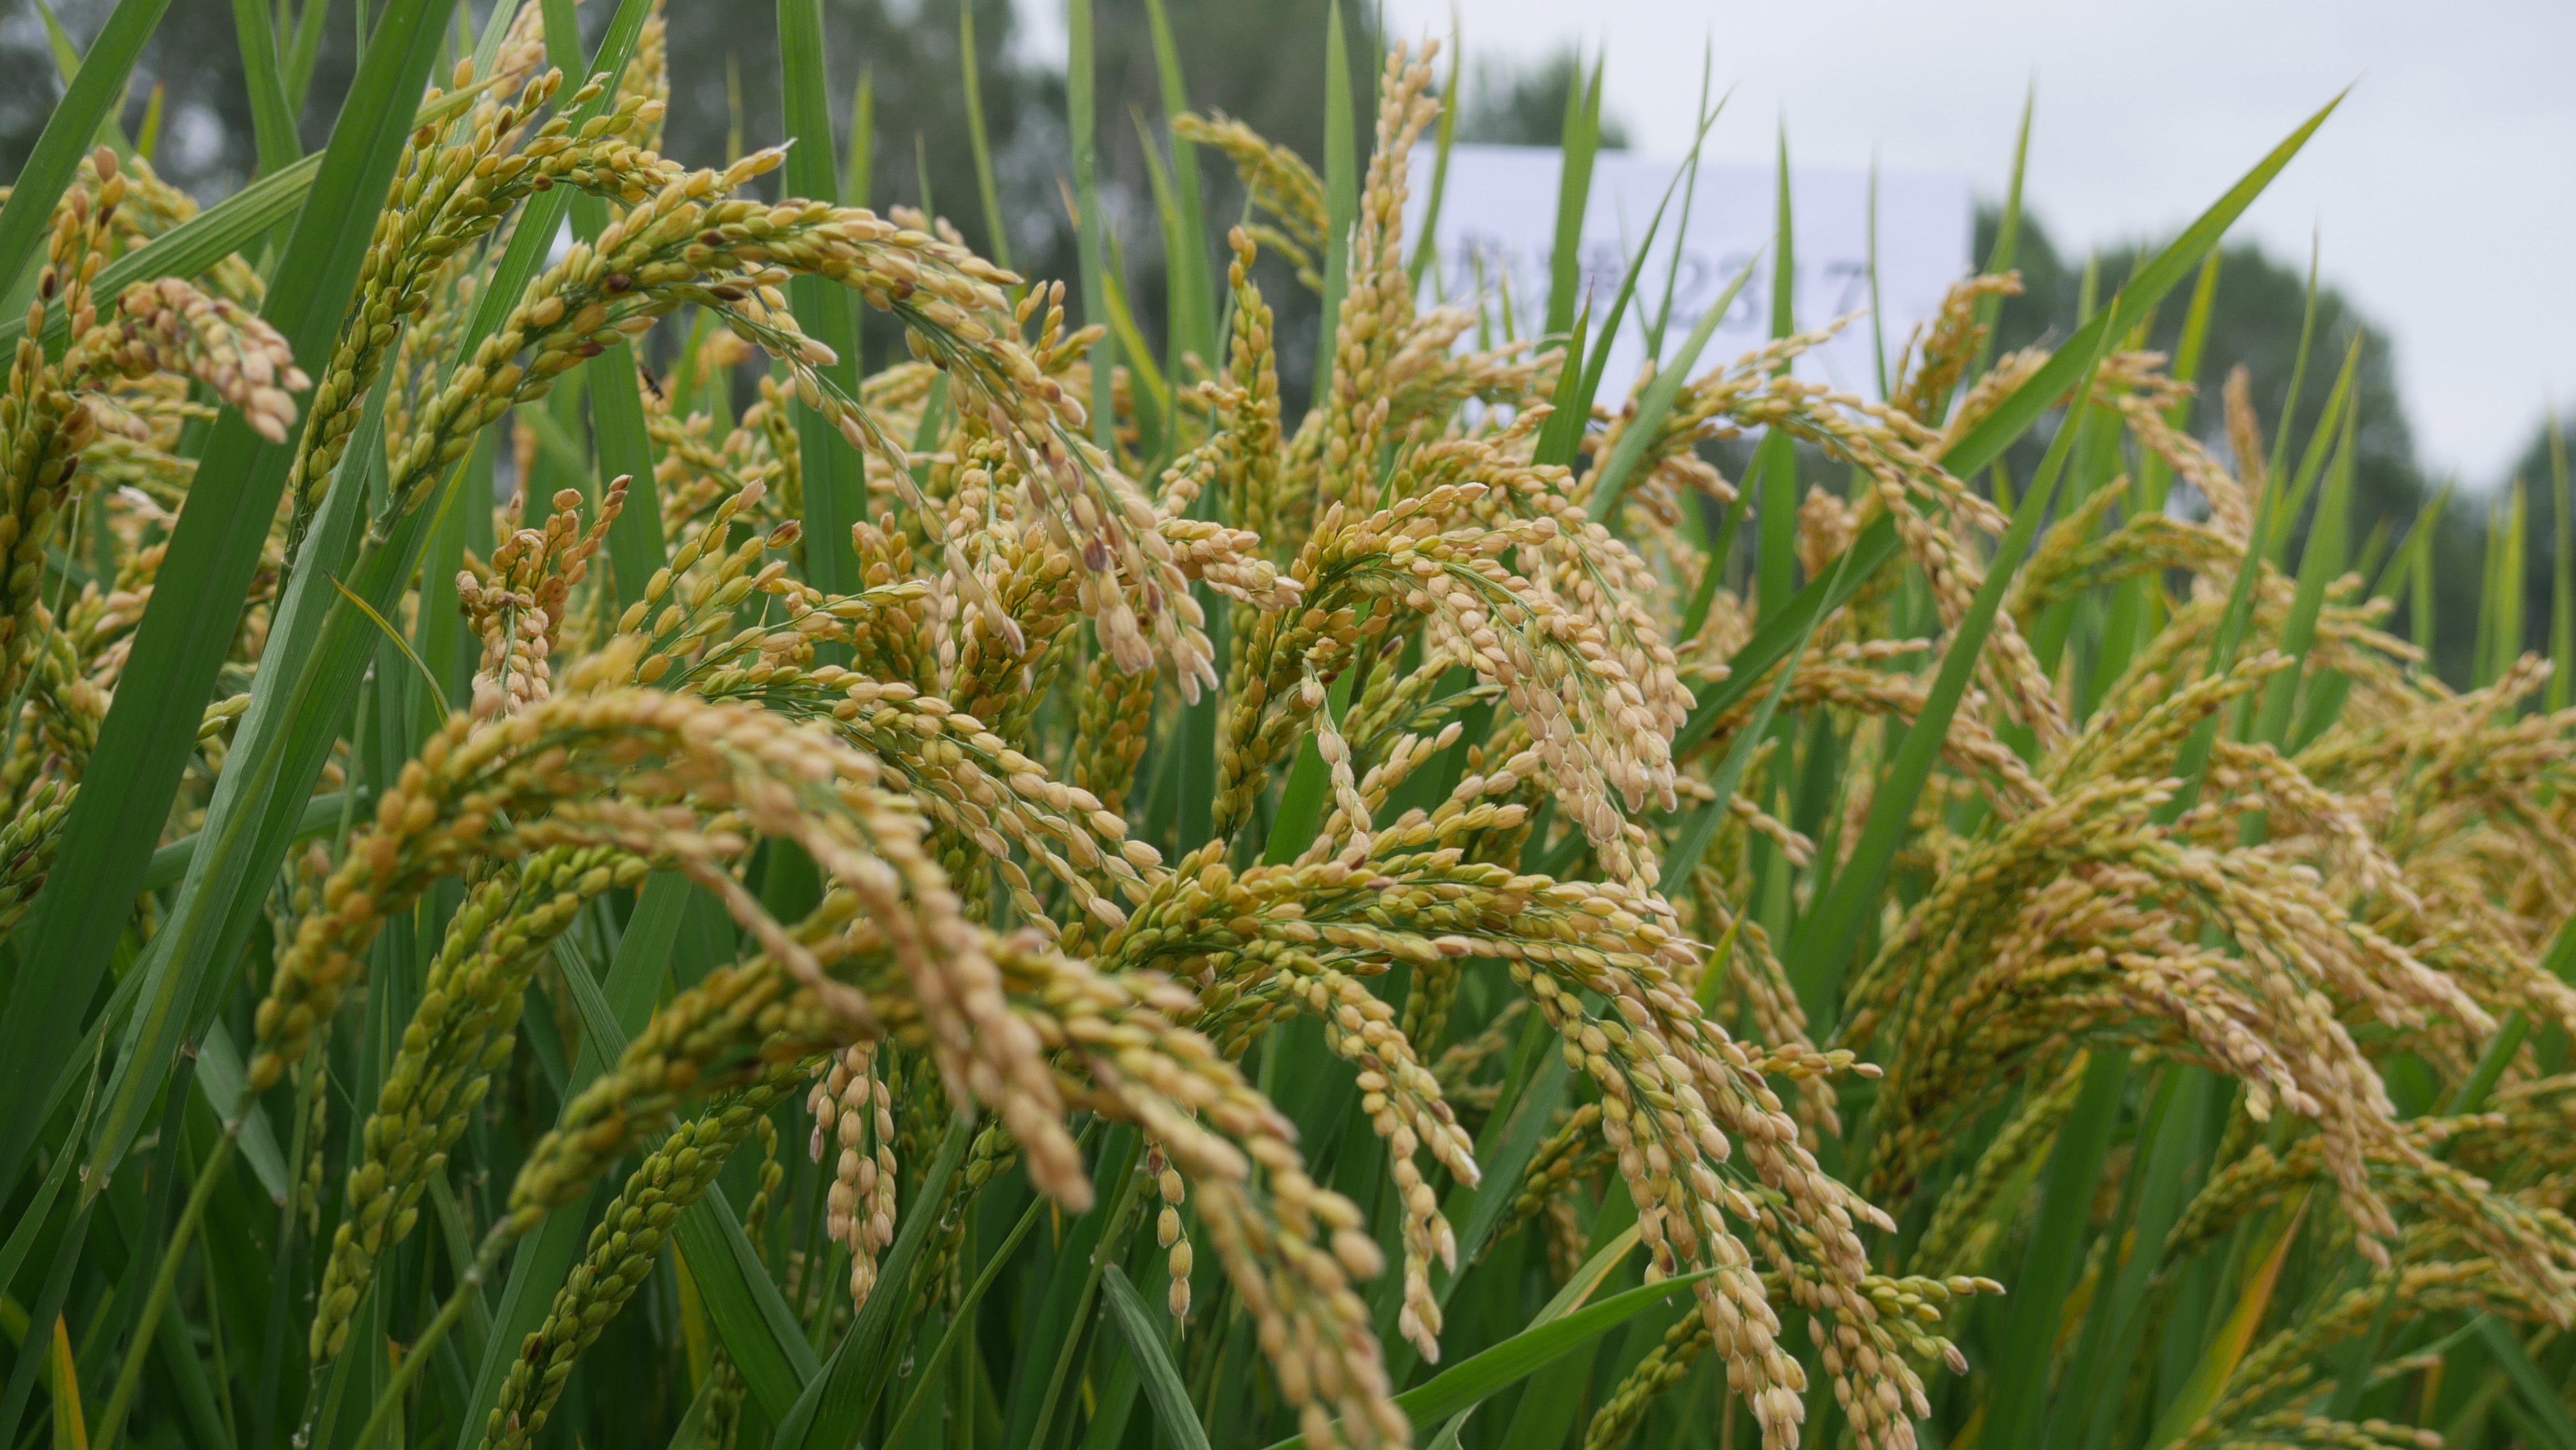 龙粳4556水稻品种图片